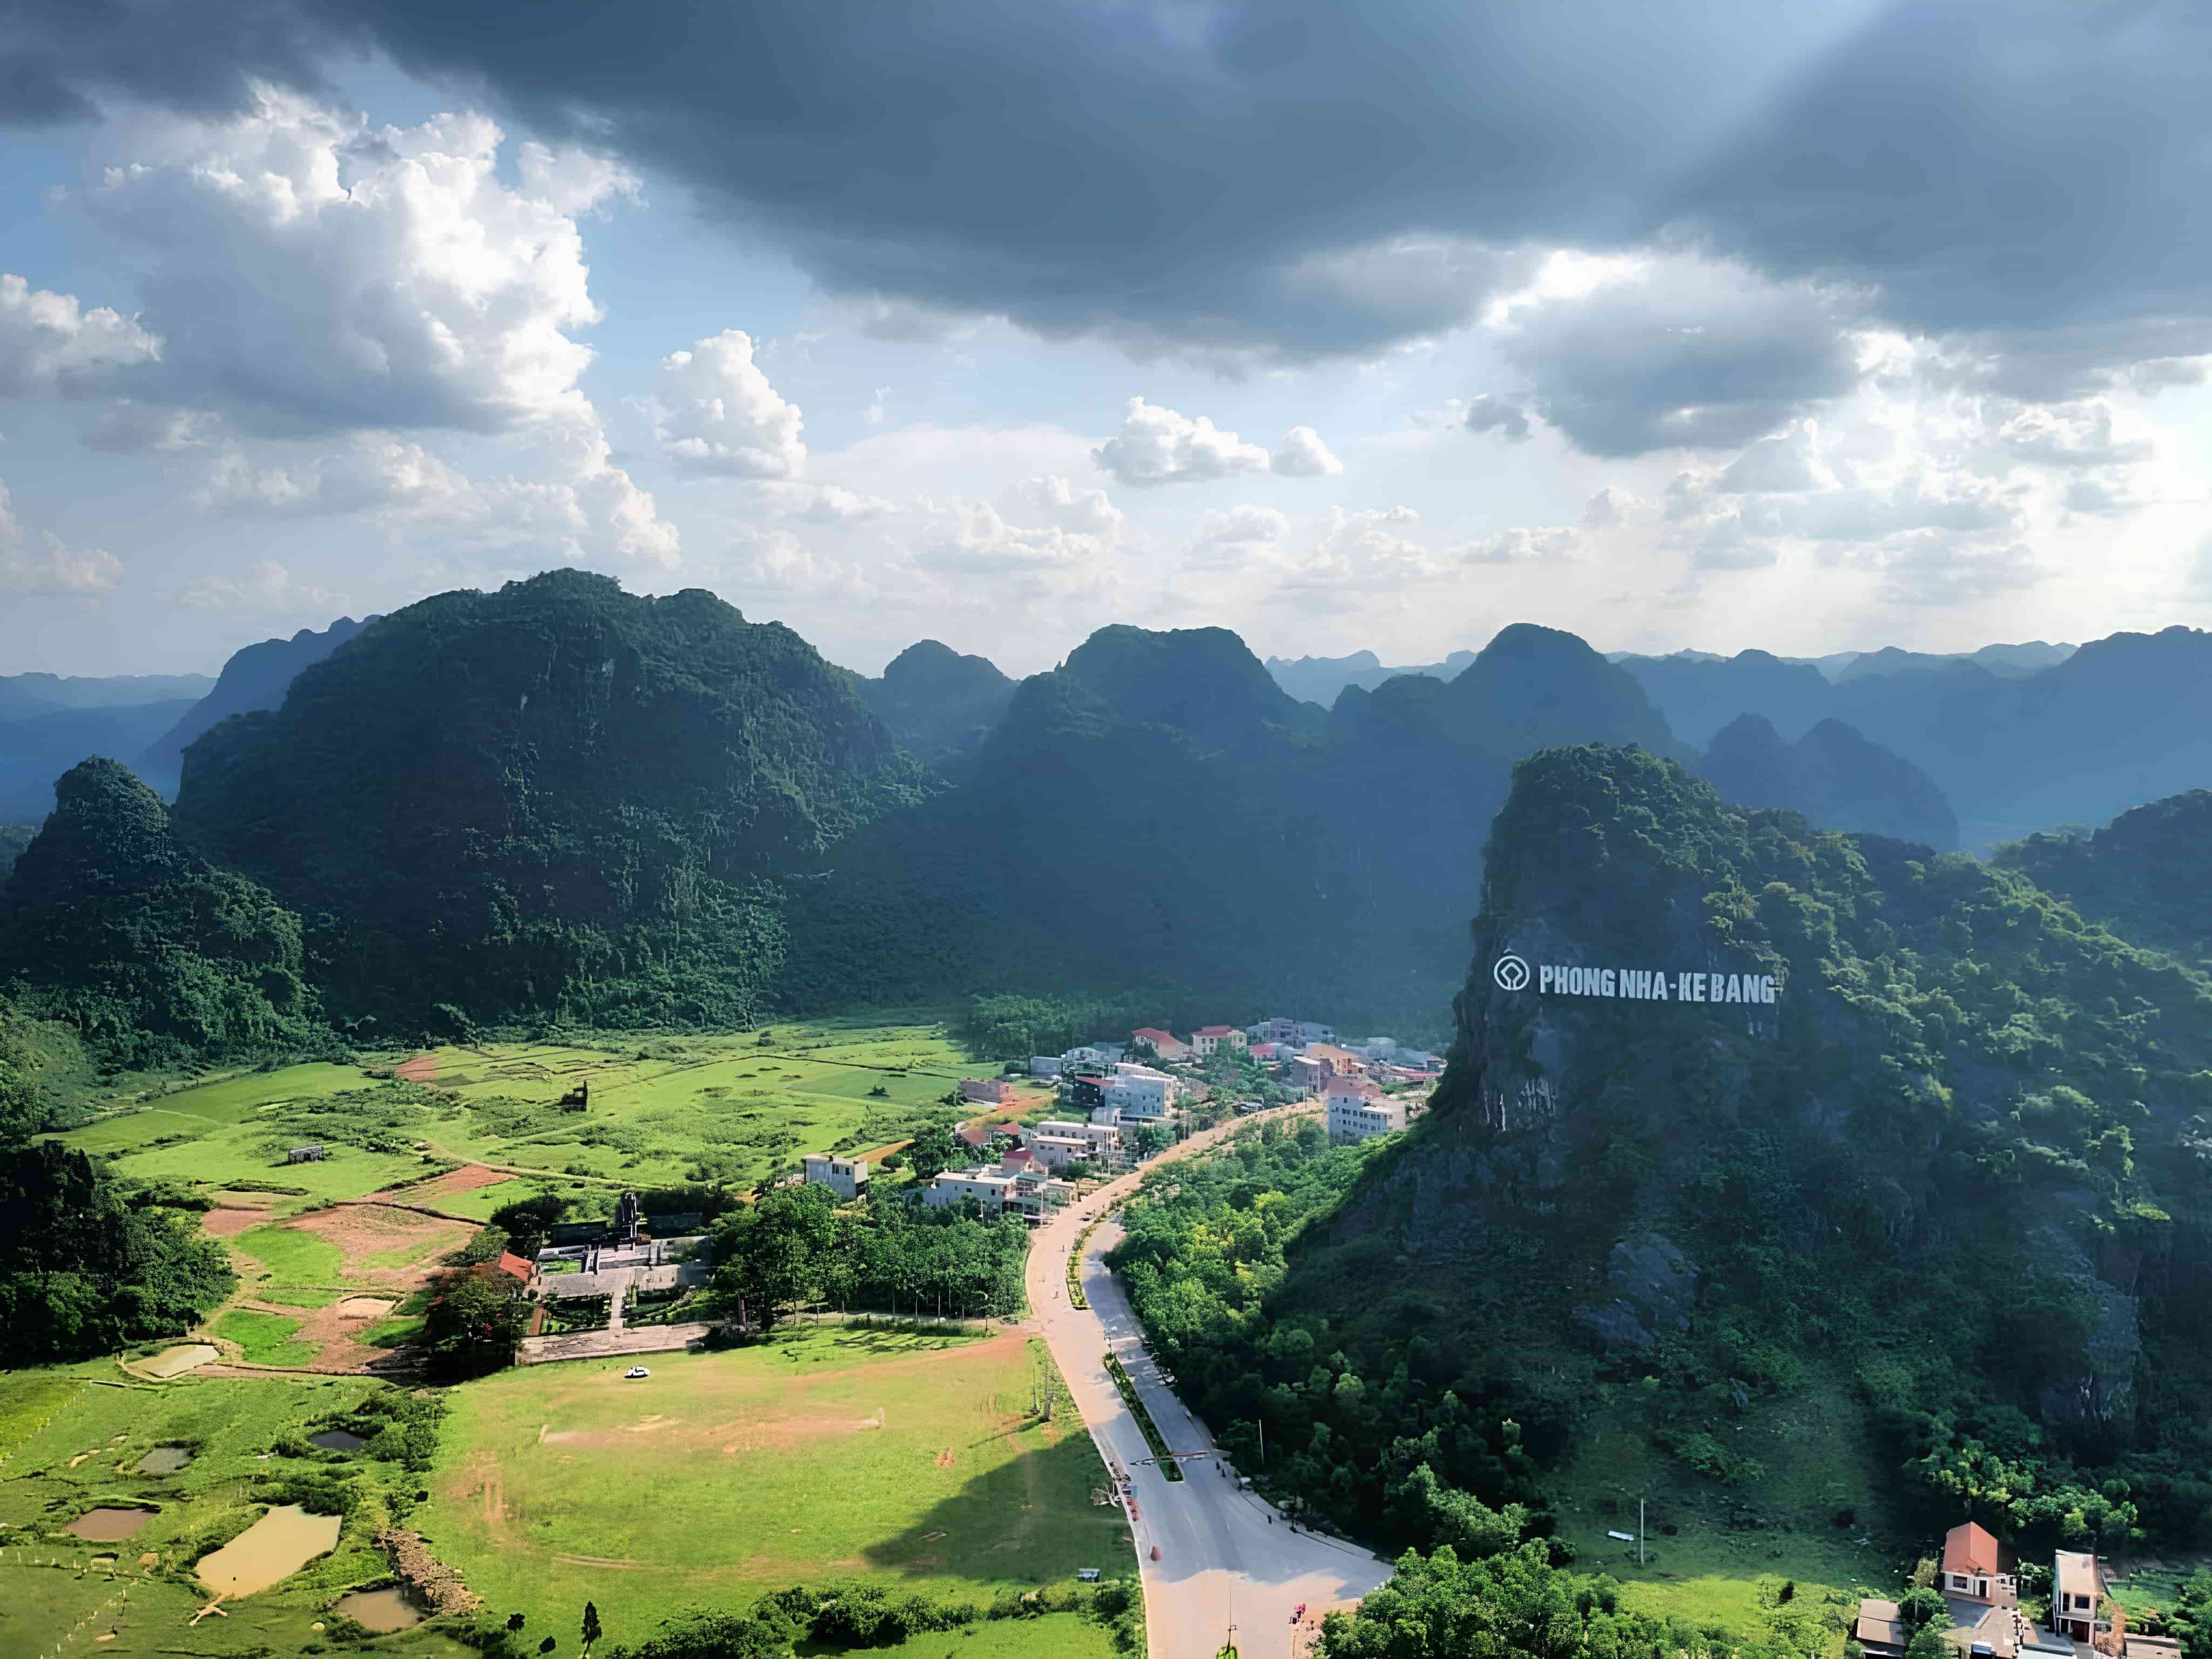 View of Phong Nha Ke Bang National Park with caves and mountains